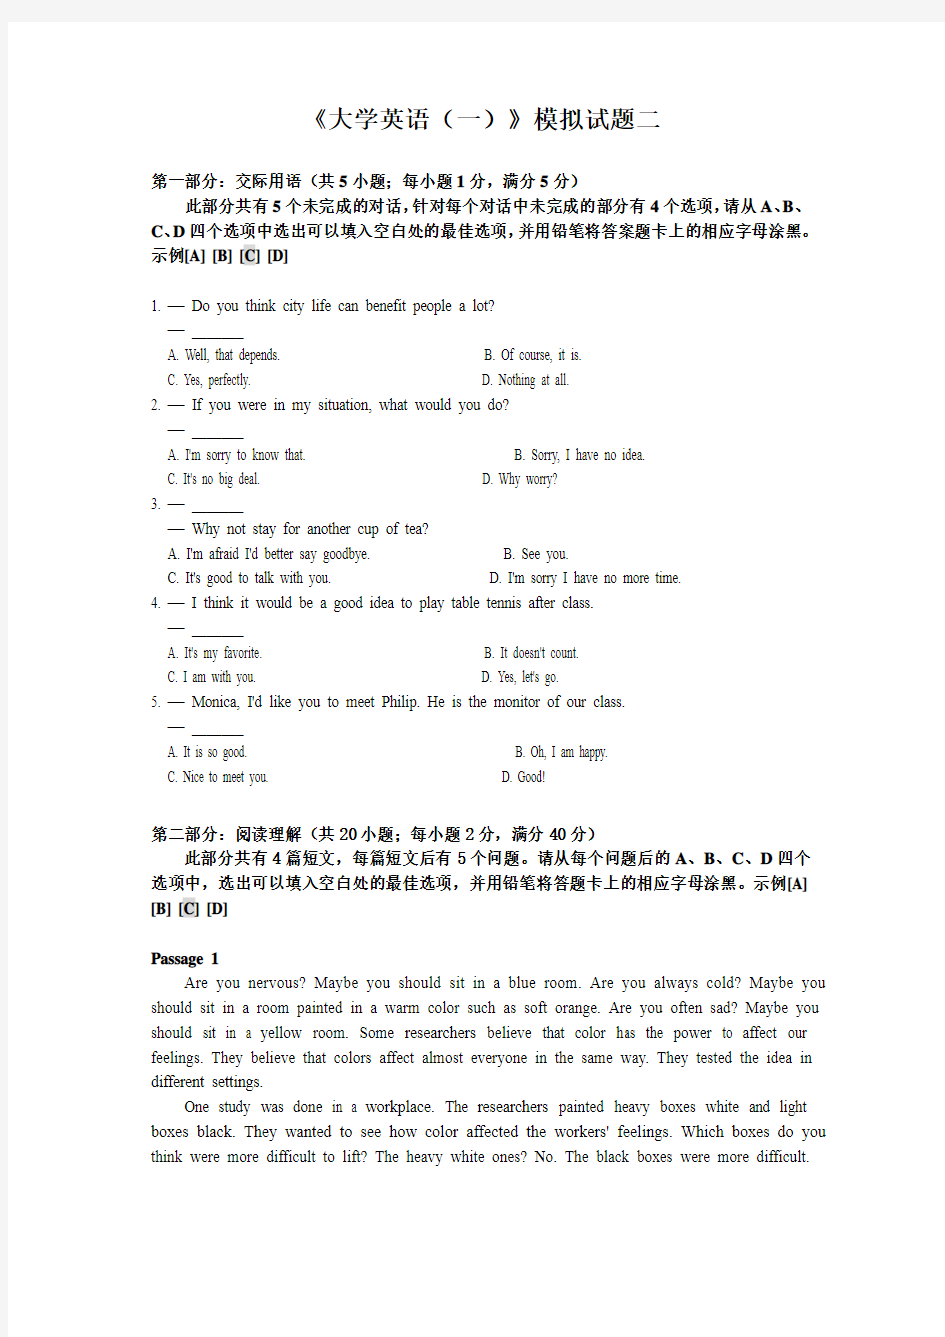 四川大学网络教育学院大学英语(一)模拟试题3 (2)